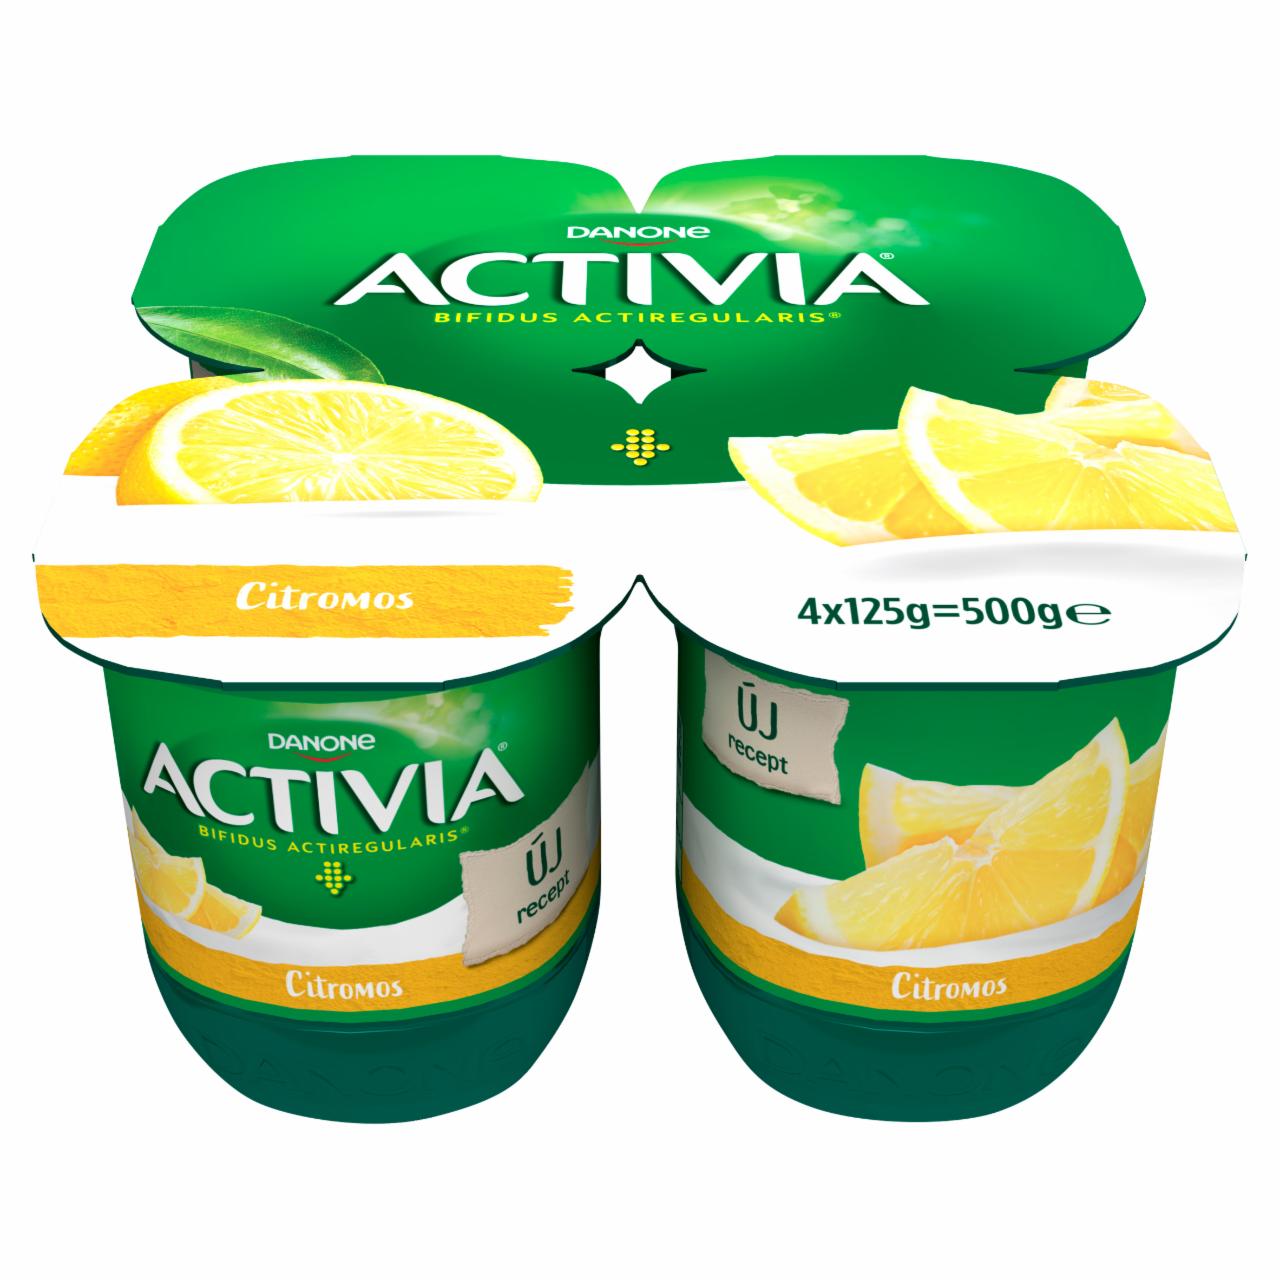 Képek - Danone citromízű, élőflórás, zsírszegény joghurt 4 x 125 g (500 g)